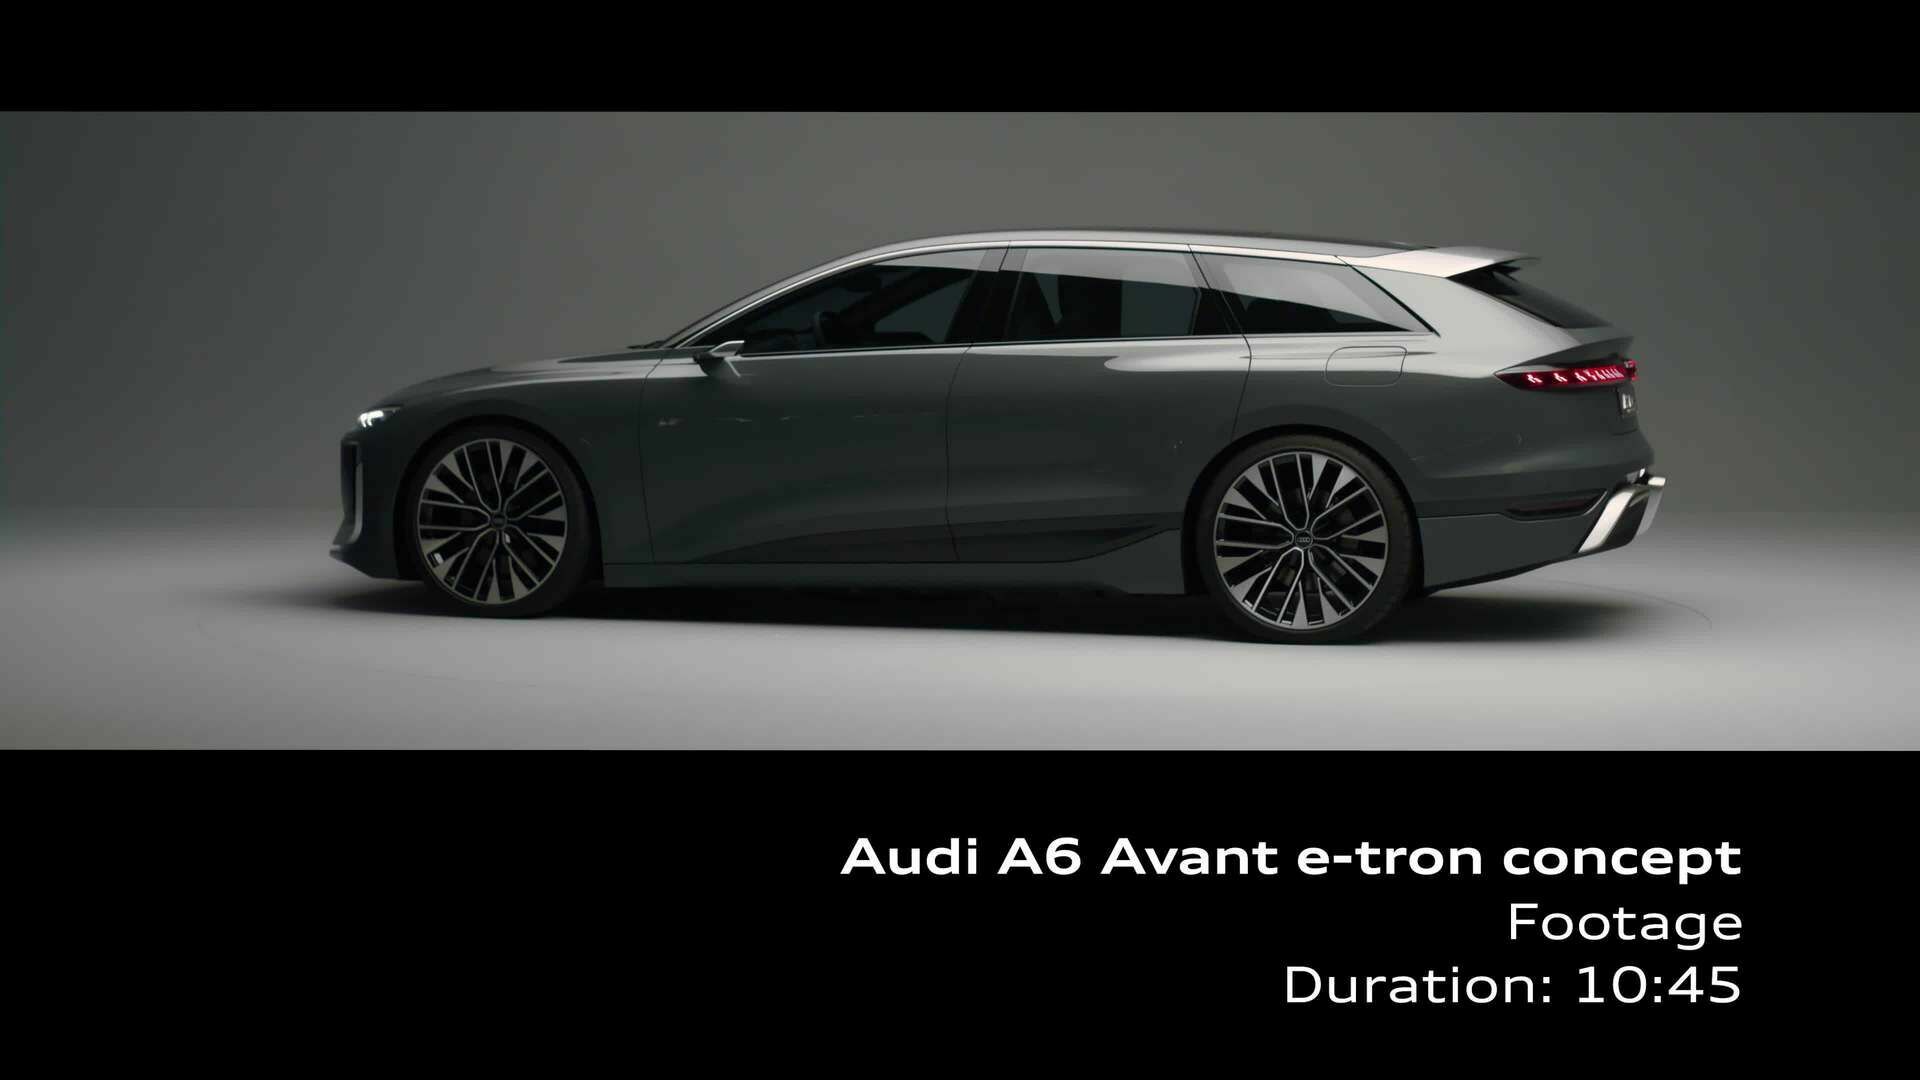 Footage: Audi A6 Avant e-tron concept (studio)